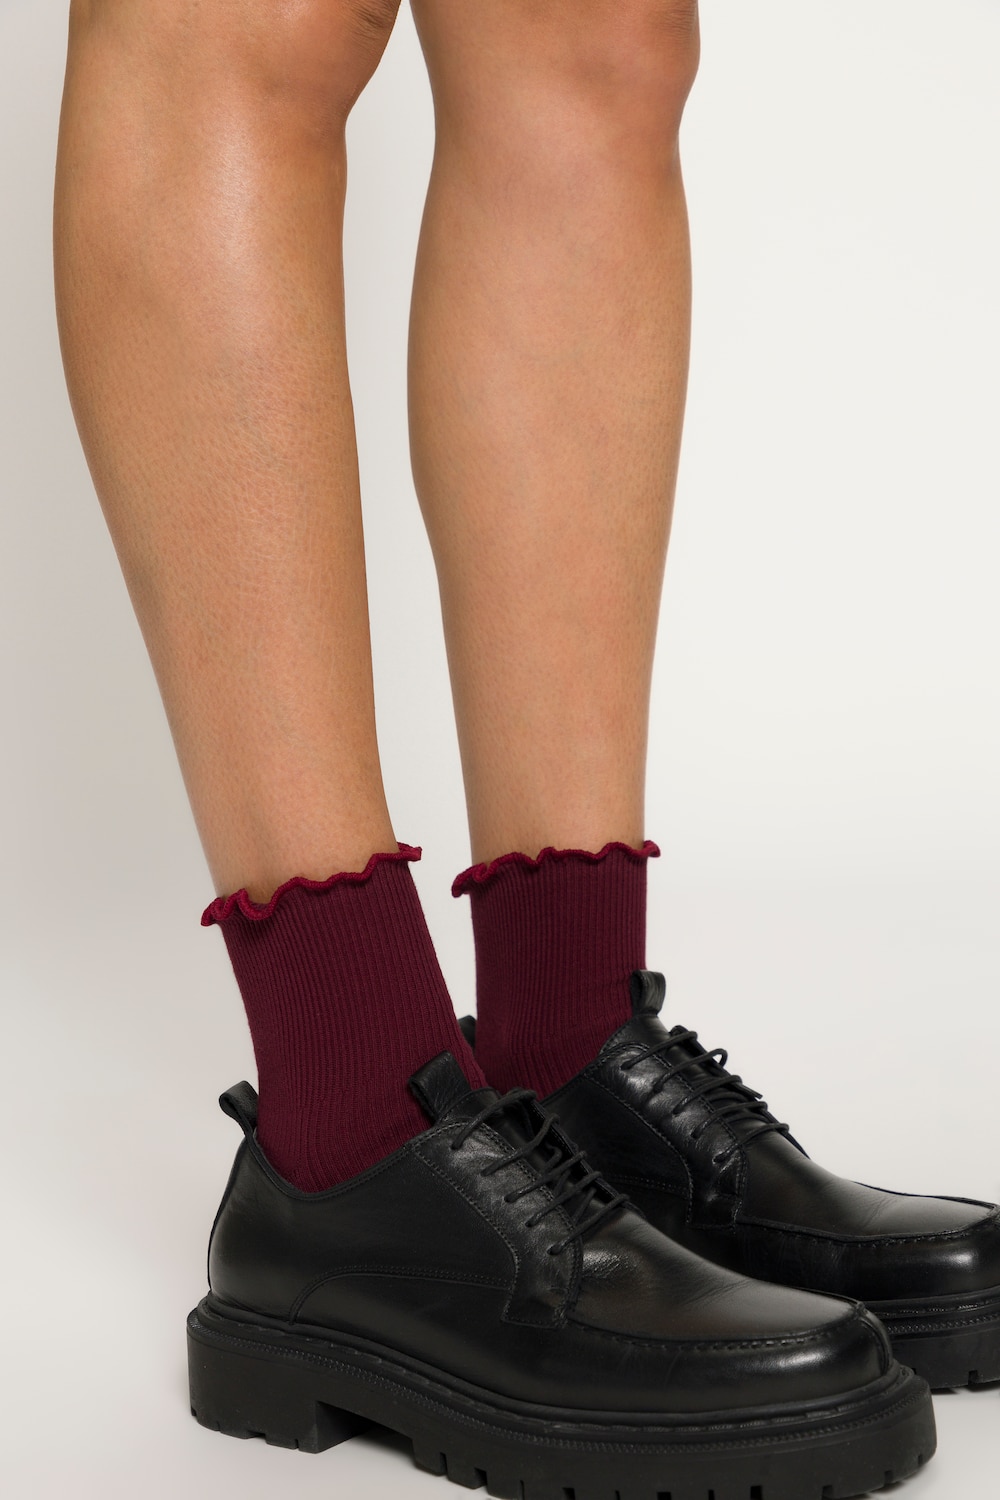 Plus Size Ruffle Cuff Ankle Socks, Woman, red, size: 4.5-6.5, cotton/synthetic fibers, Ulla Popken